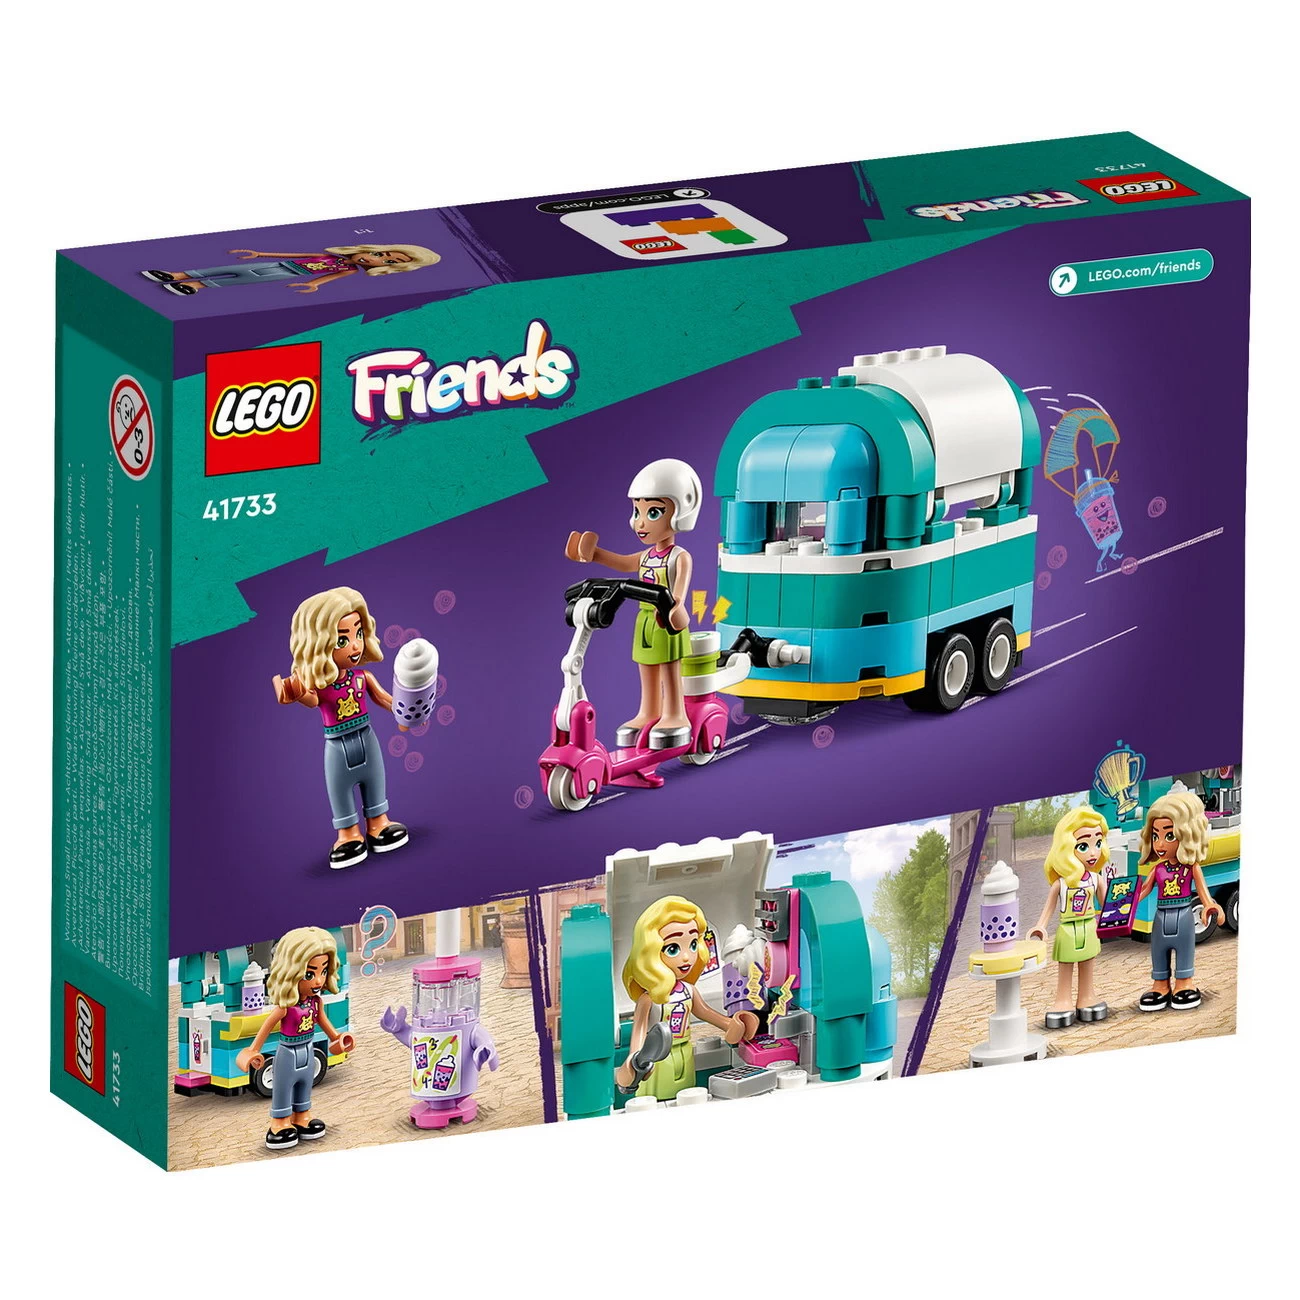 LEGO Friends 41733 - Bubble-Tea-Mobil